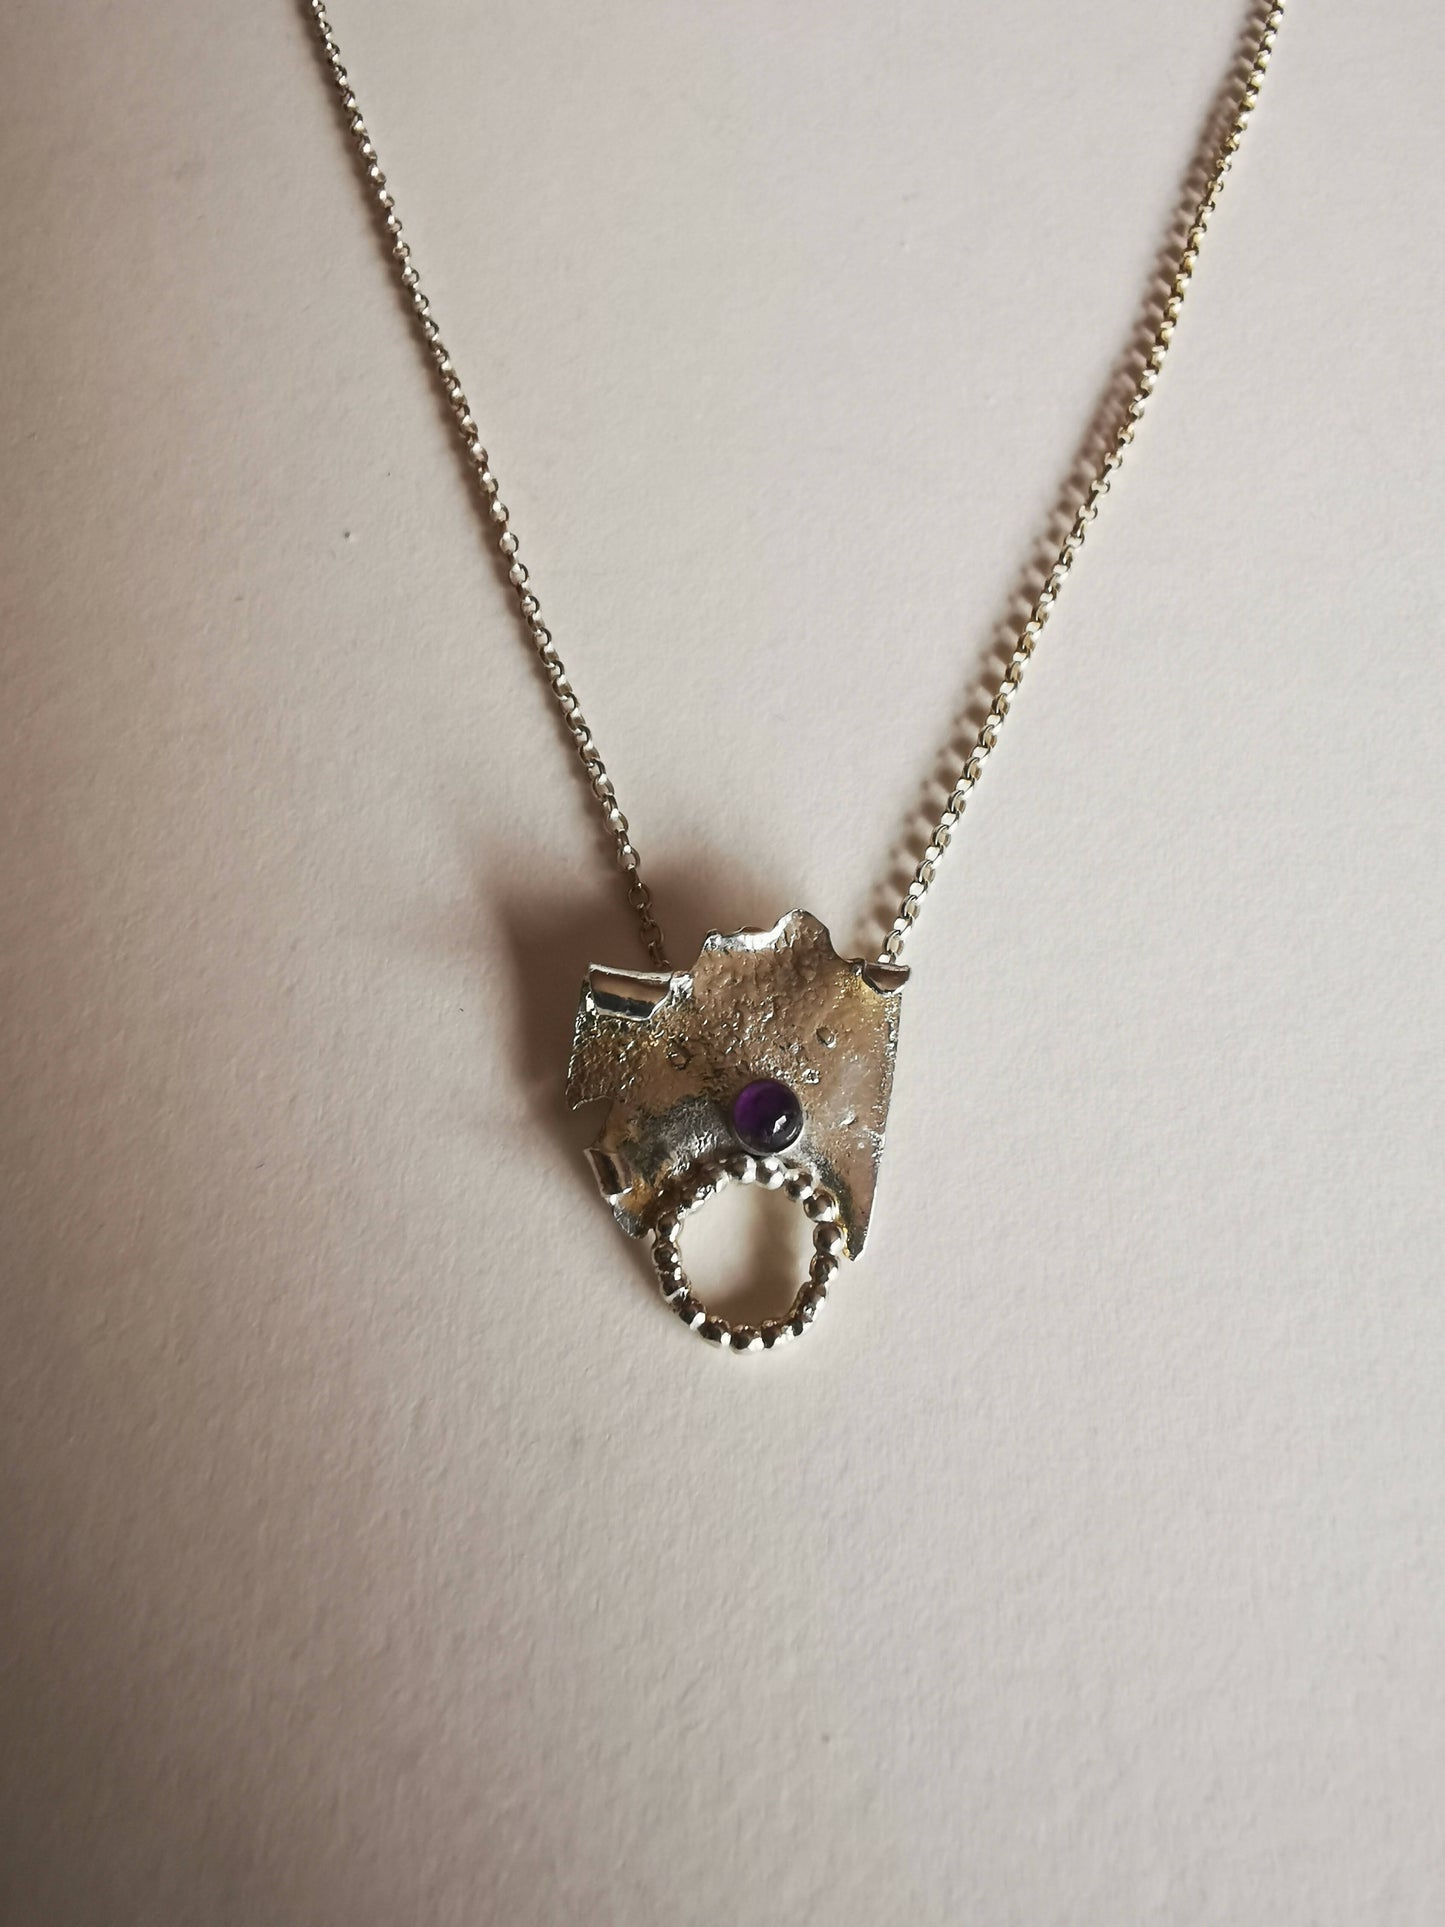 Small. Silver pendant